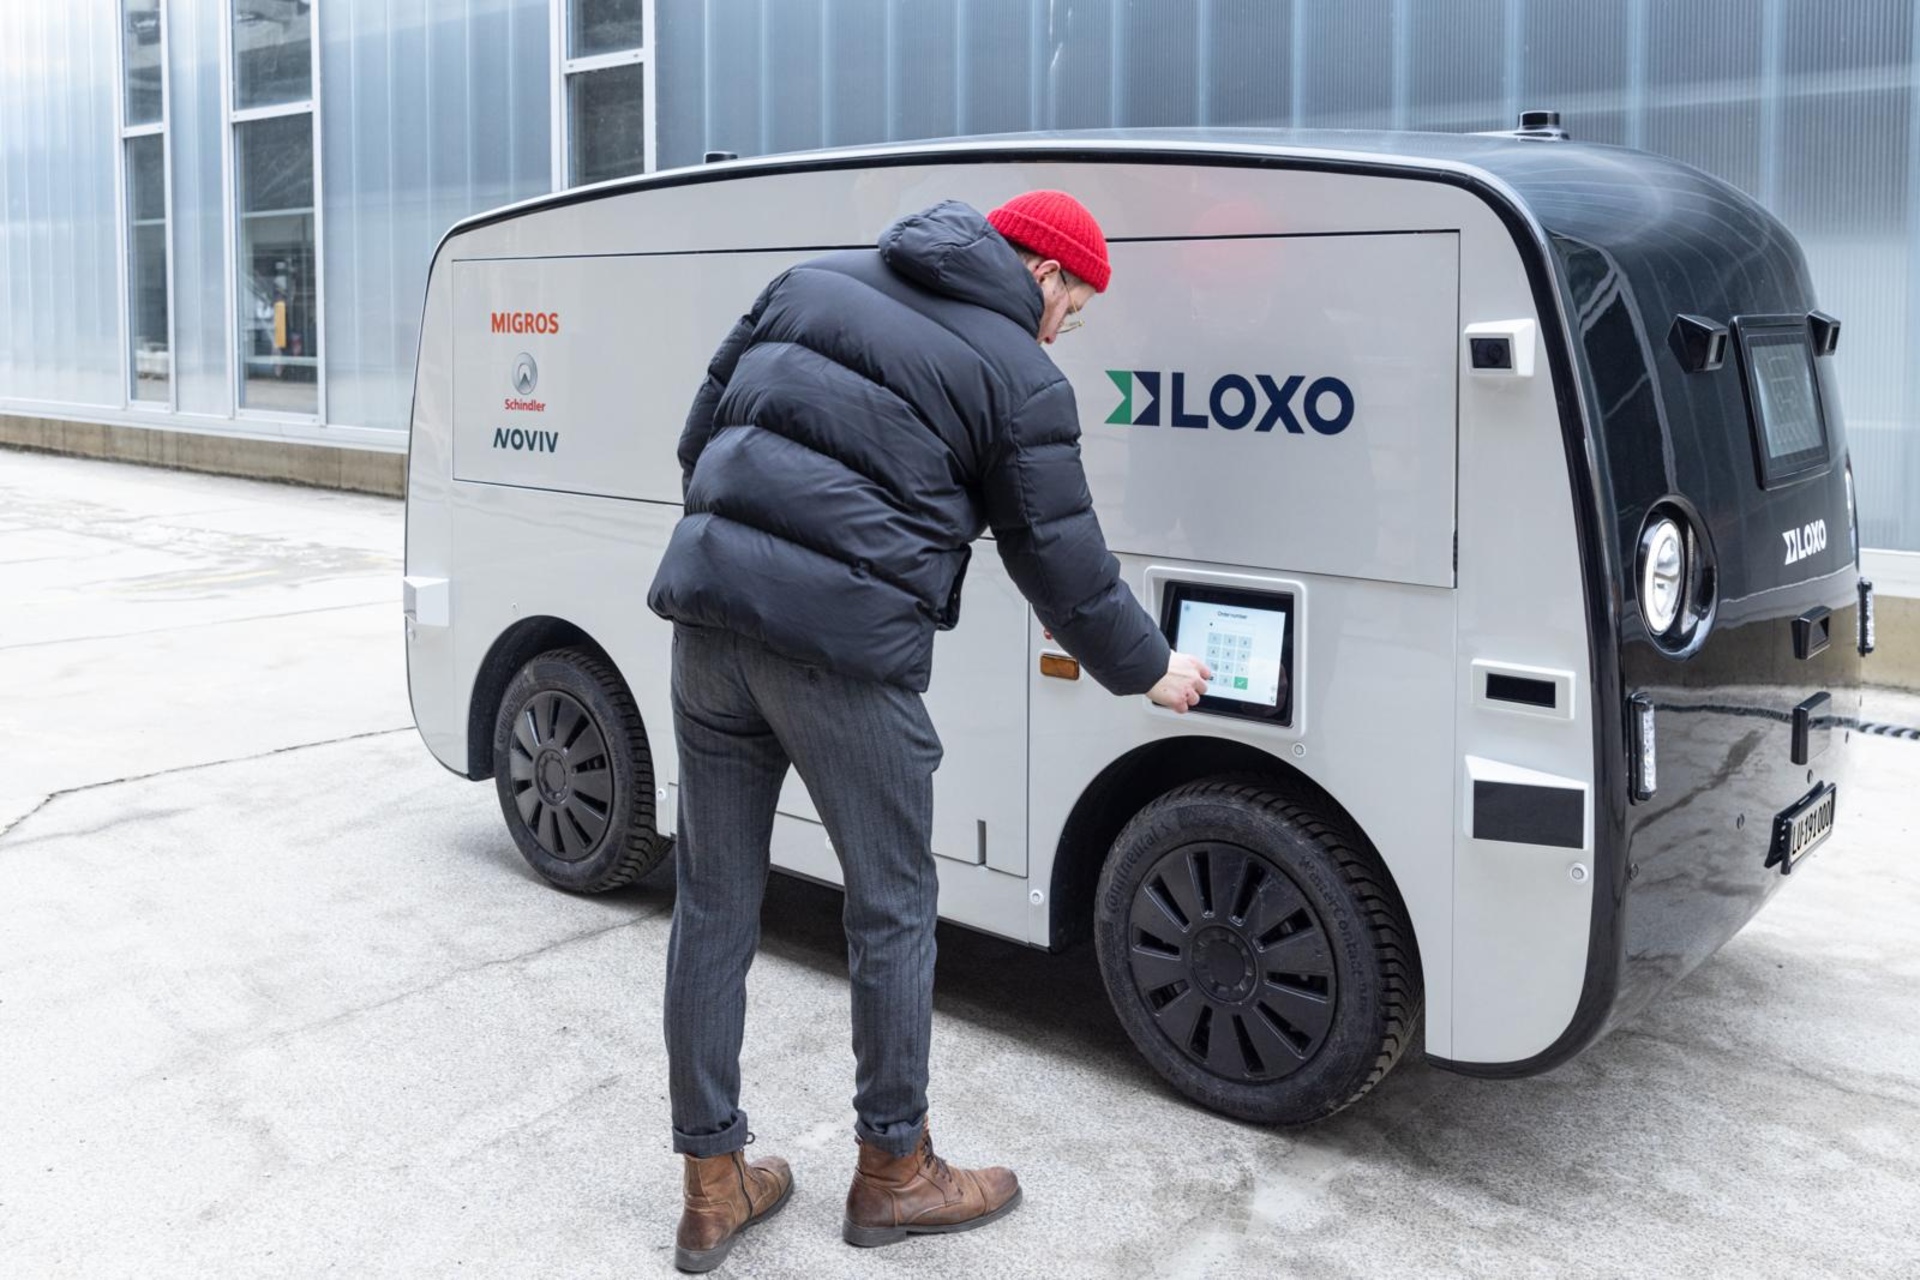 Migronomous: der selbstfahrende Elektro-Van, der täglich den Migros-Supermarkt und die Schindler-Werke in Ebikon im Kanton Luzern verbindet